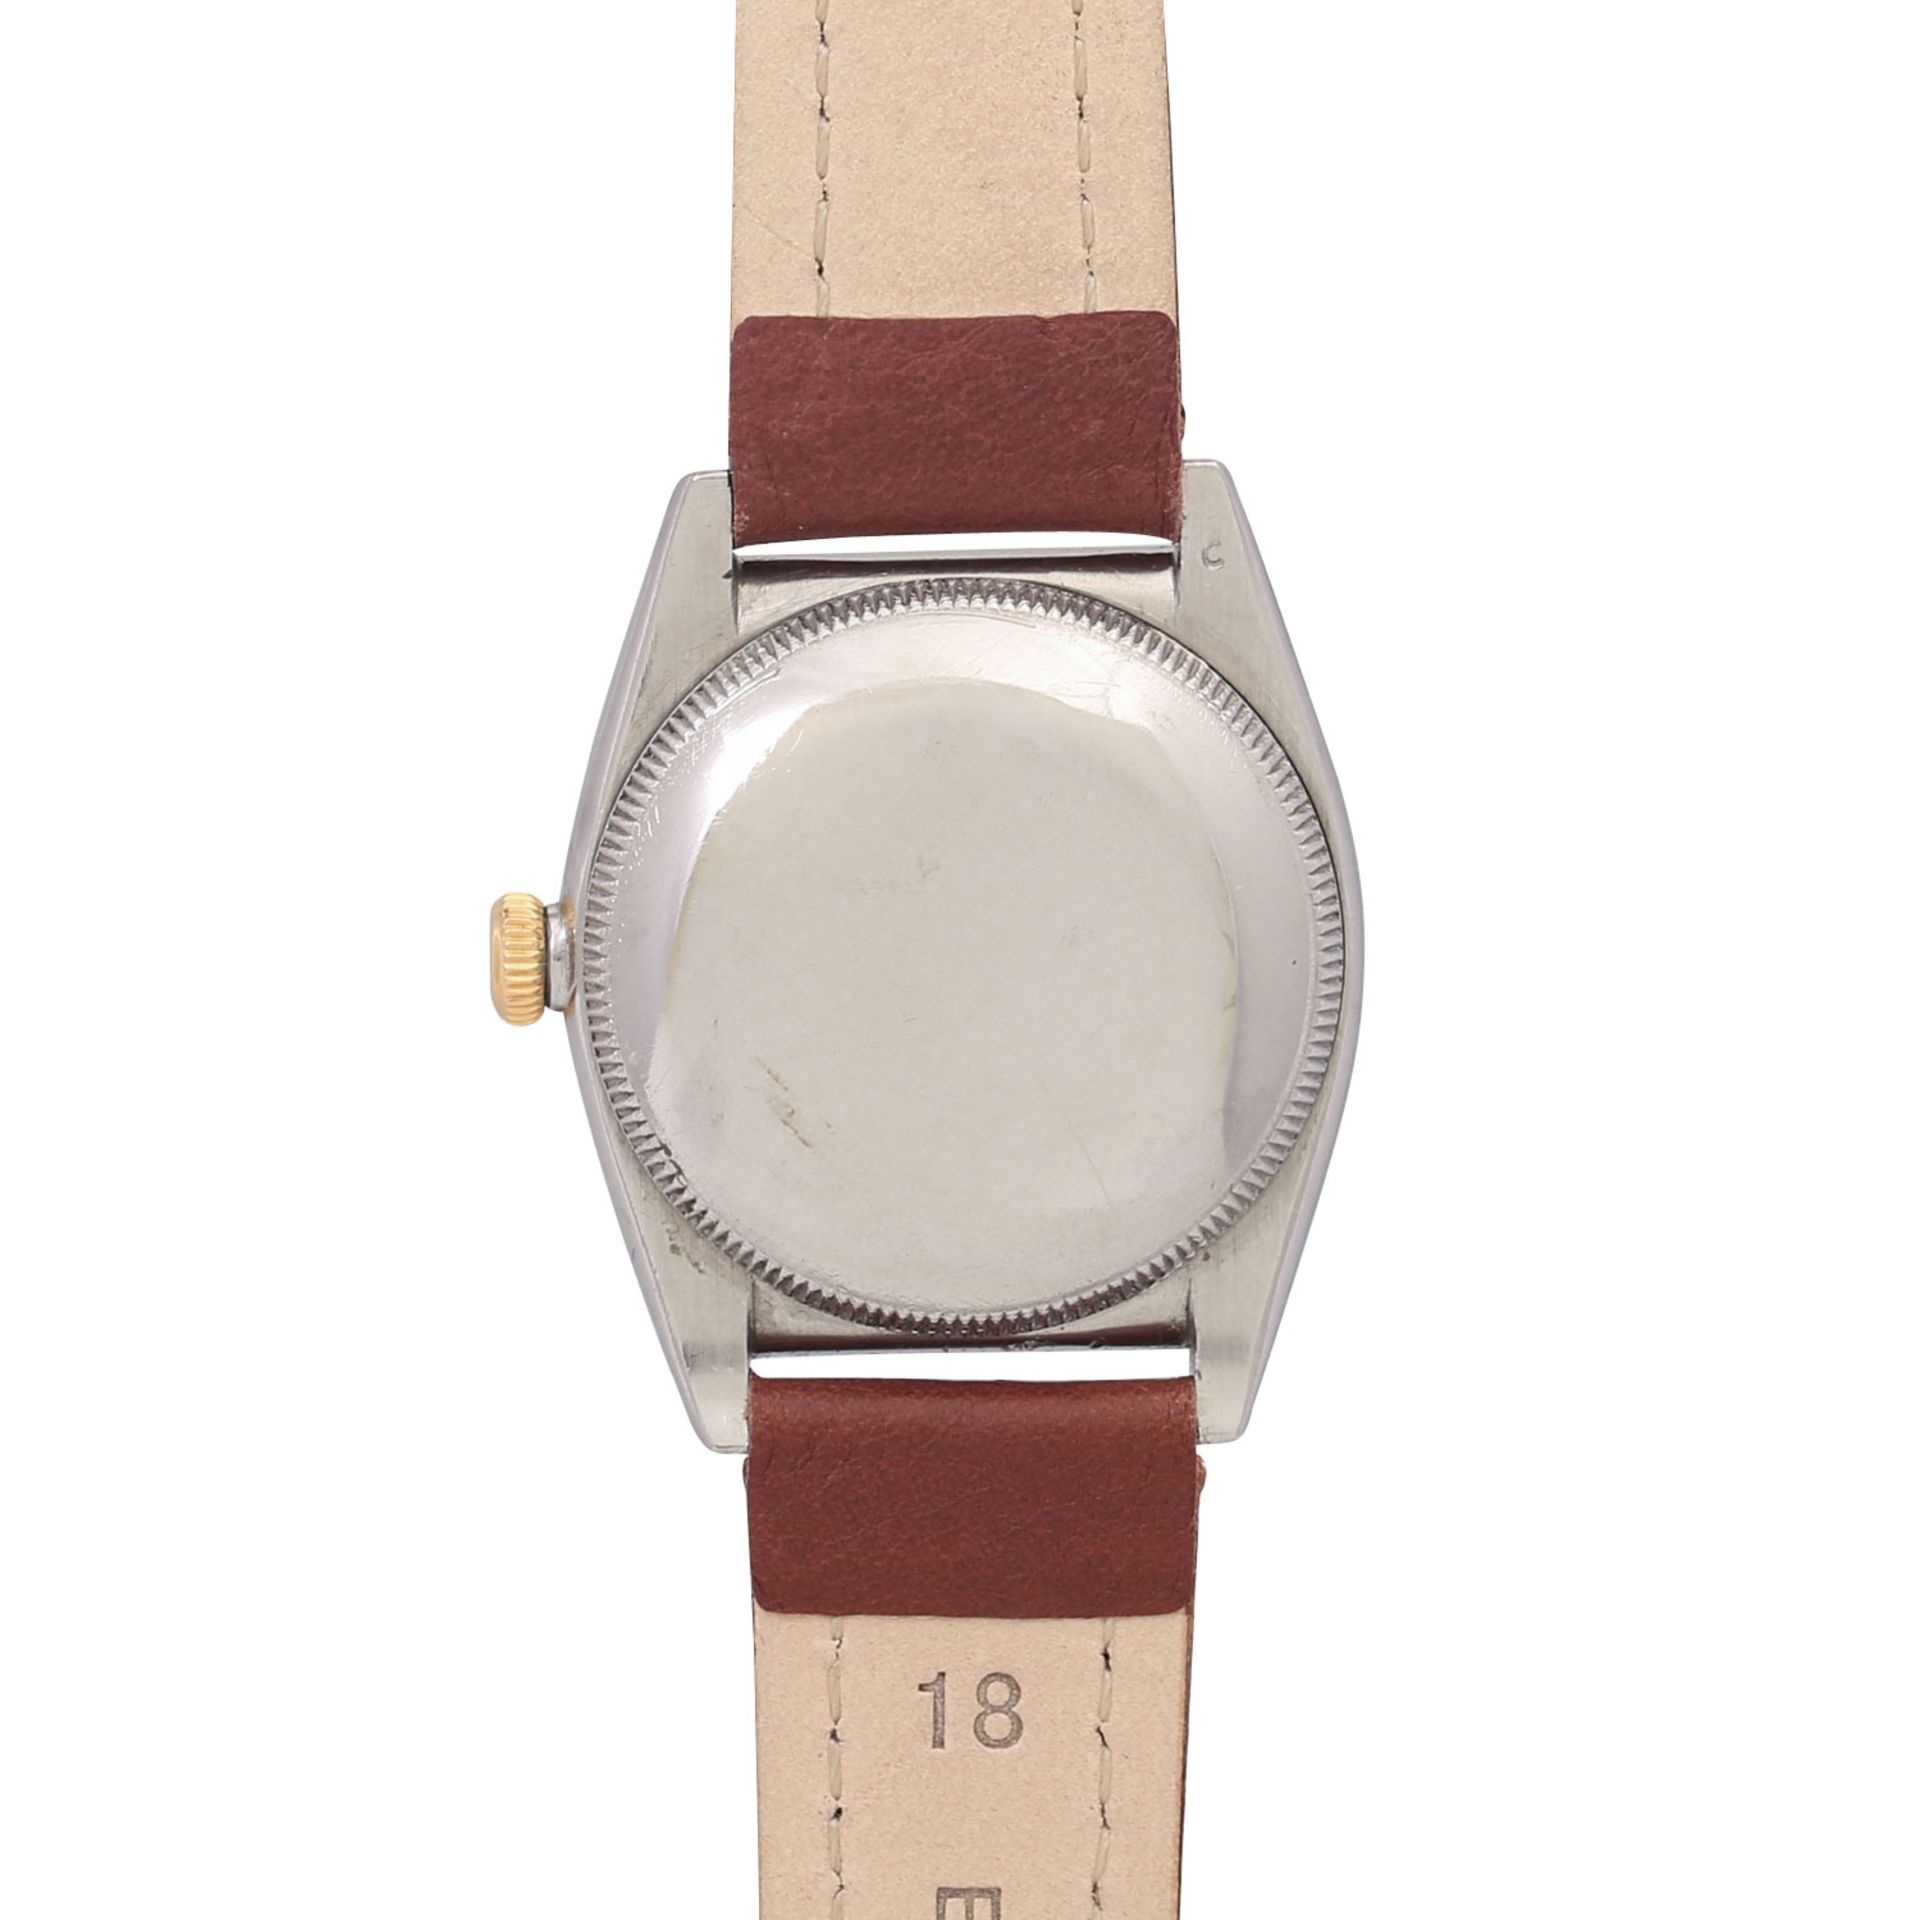 ROLEX Vintage Oyster Perpetual Chronometre "Bubble Back", Ref. 3372. Armbanduhr. Ca. 1940er Jahre. - Bild 2 aus 7